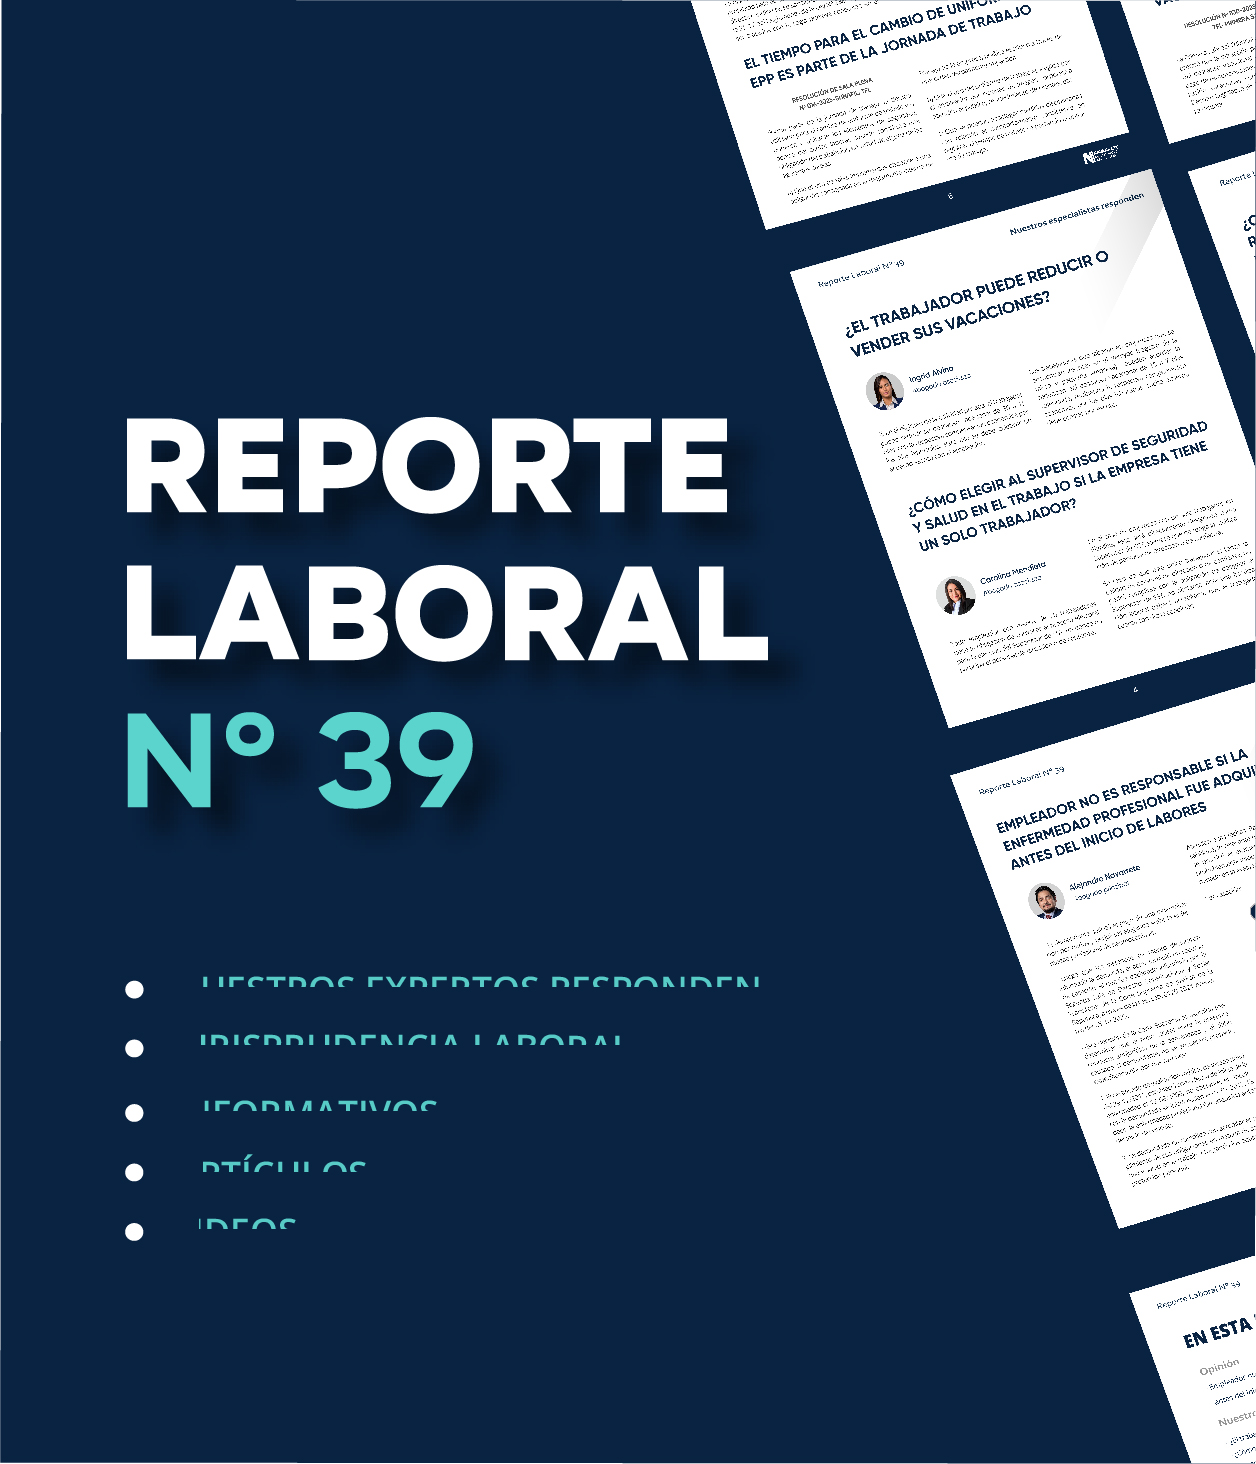 Reporte Laboral N° 39